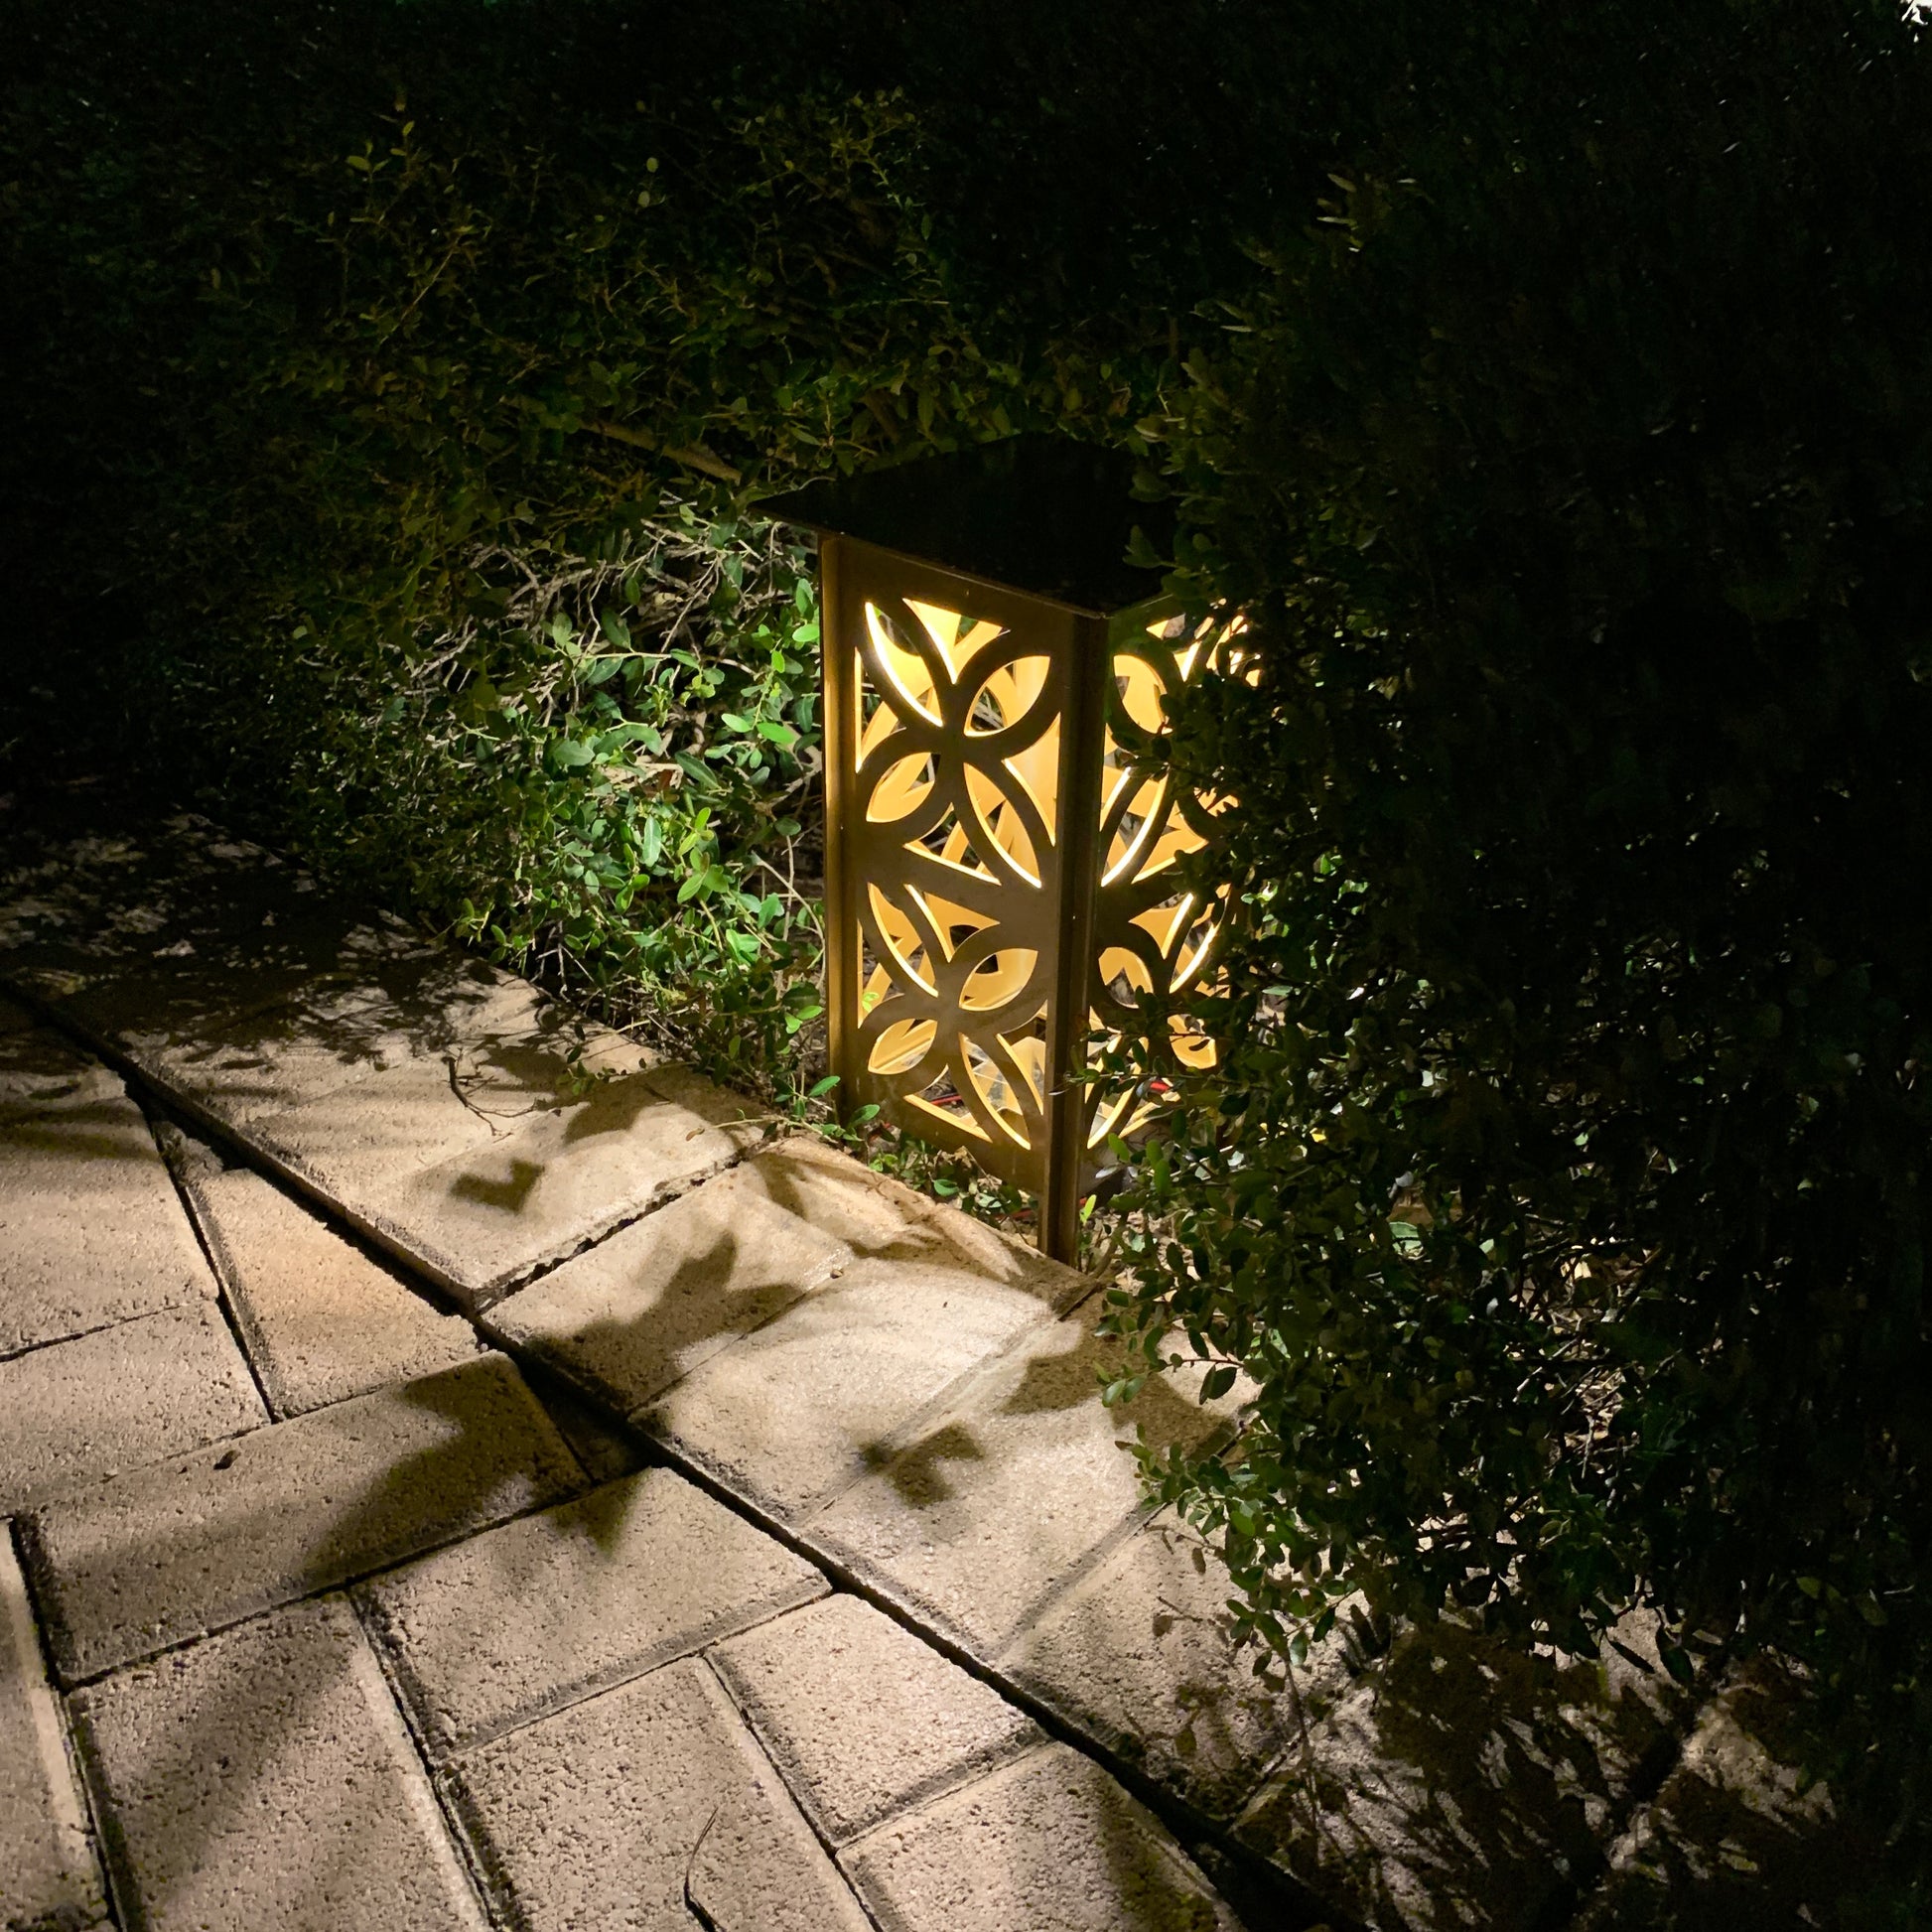 RadiantLight Mid-Century Landscape Light - Garden Light gold at night